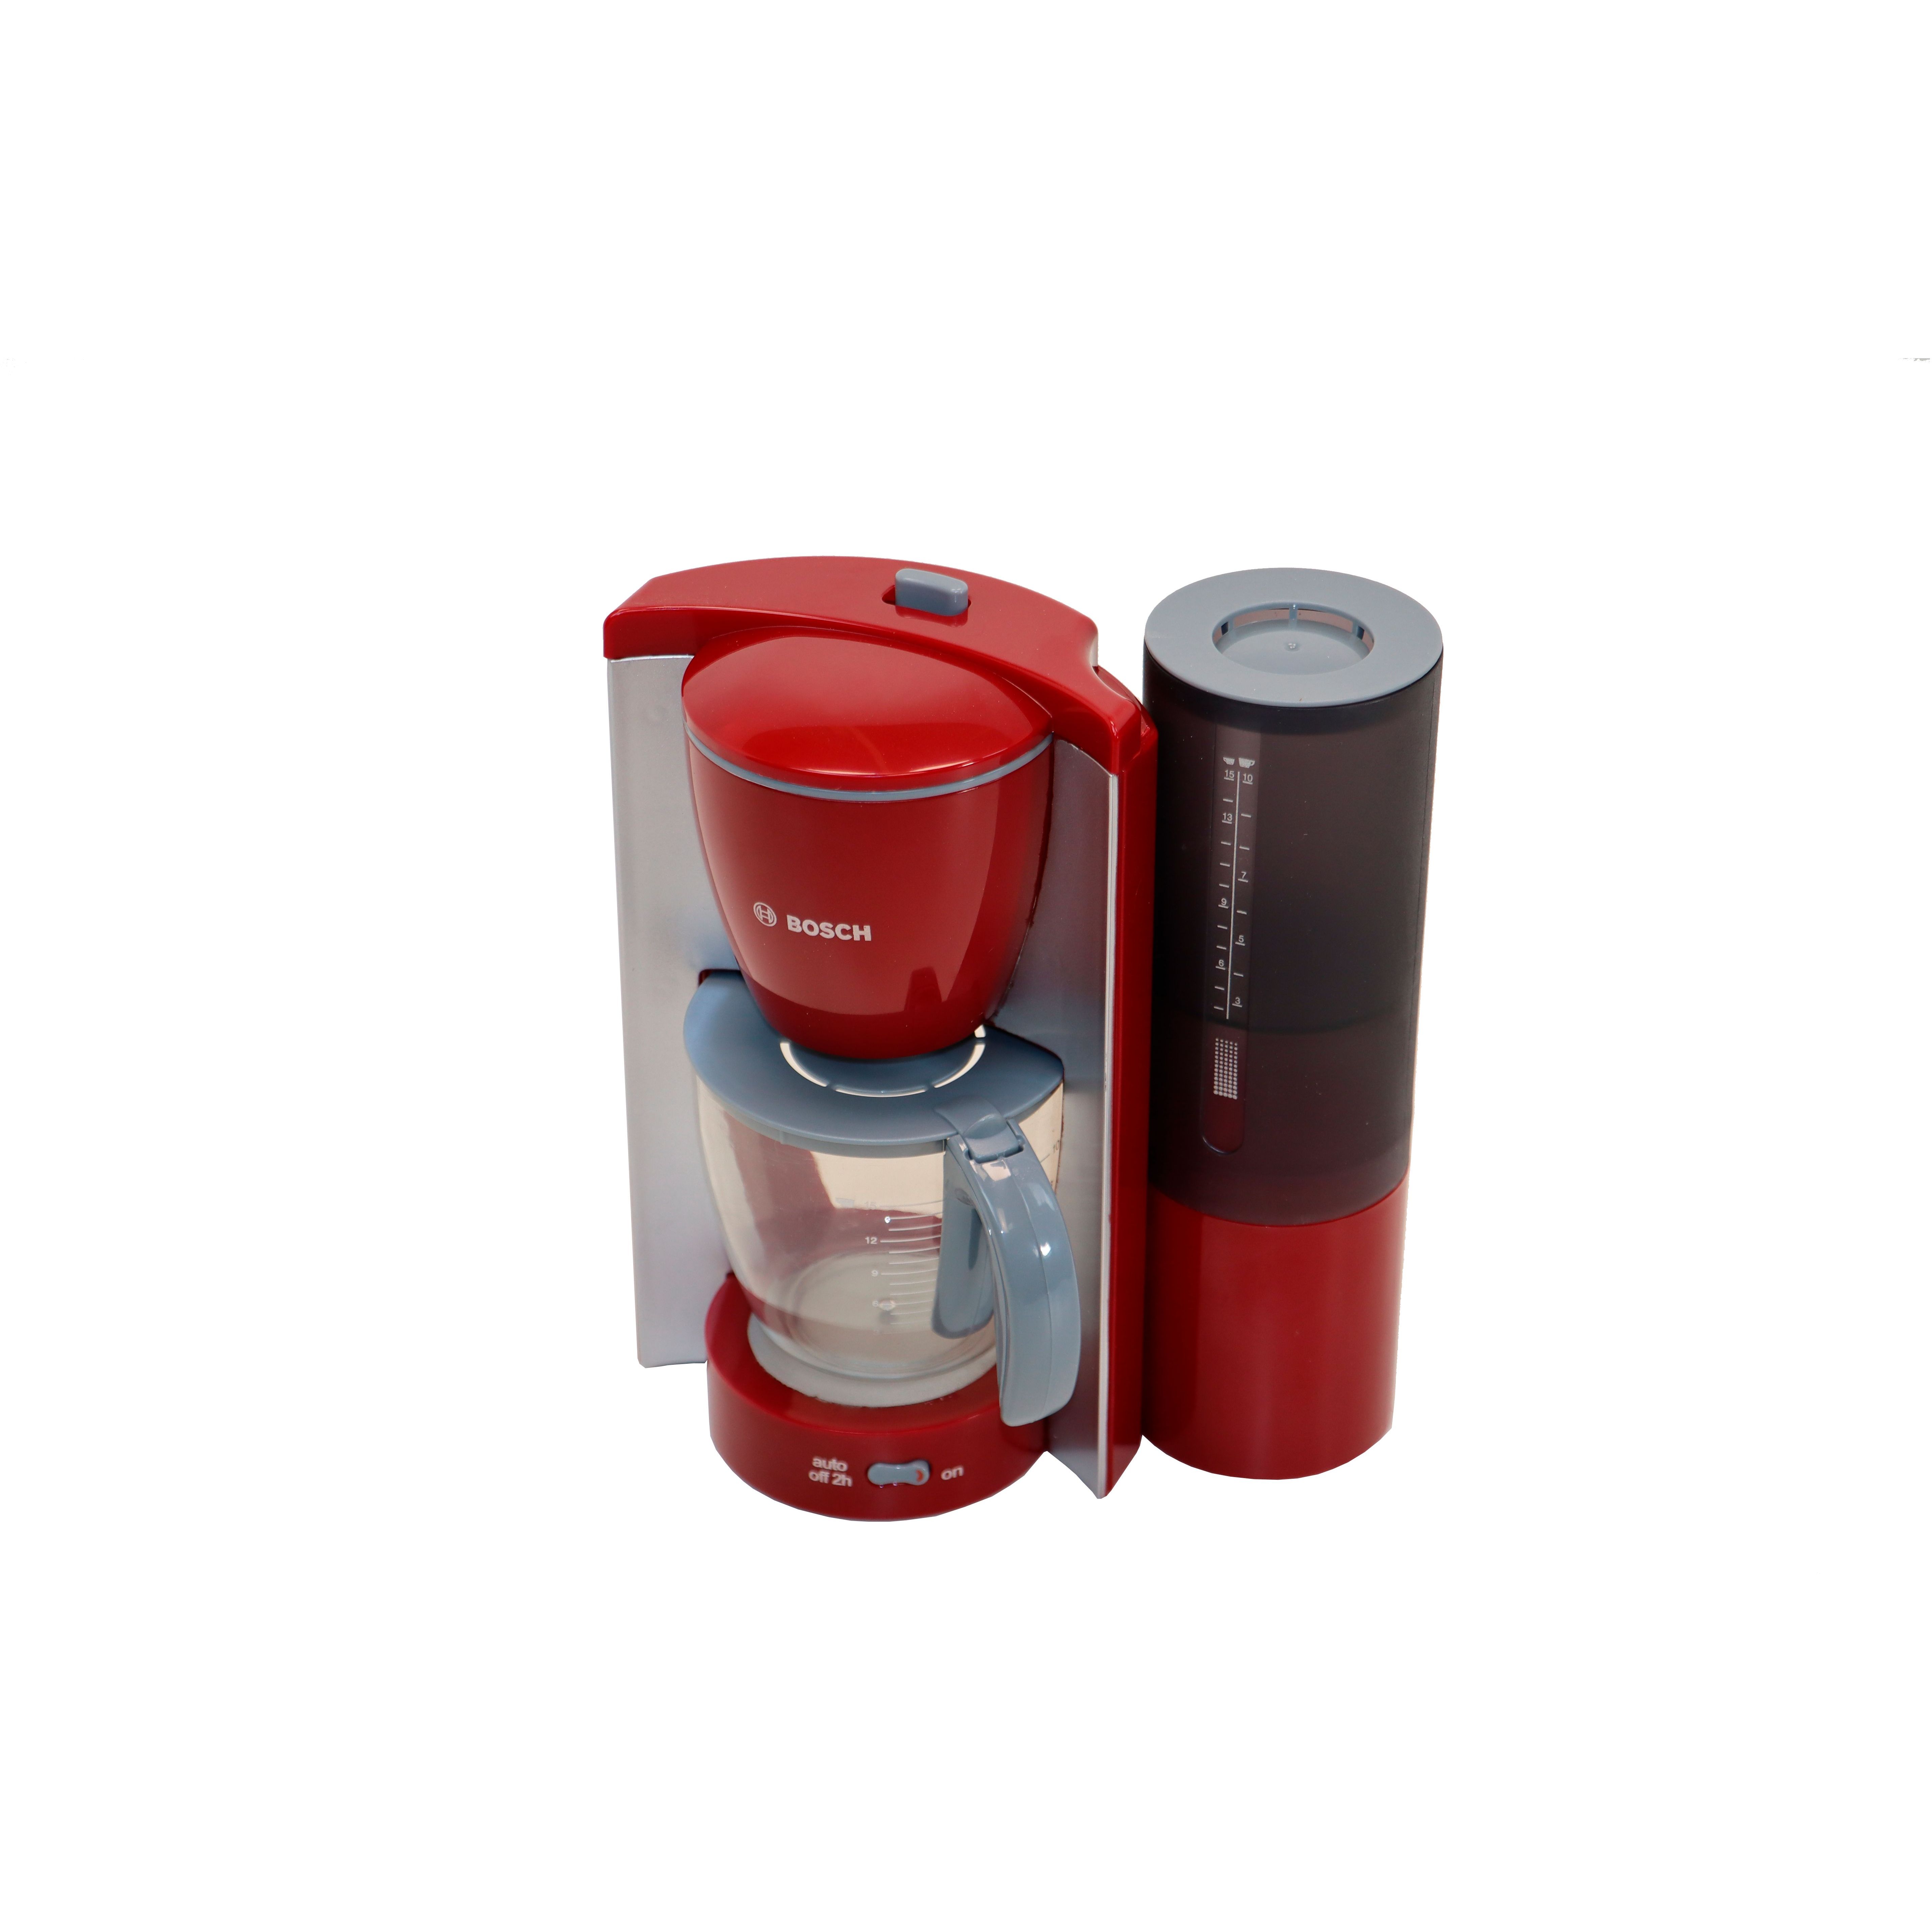 Игрушечный набор Bosch Mini кофеварка с резервуаром для воды (9577) - фото 2